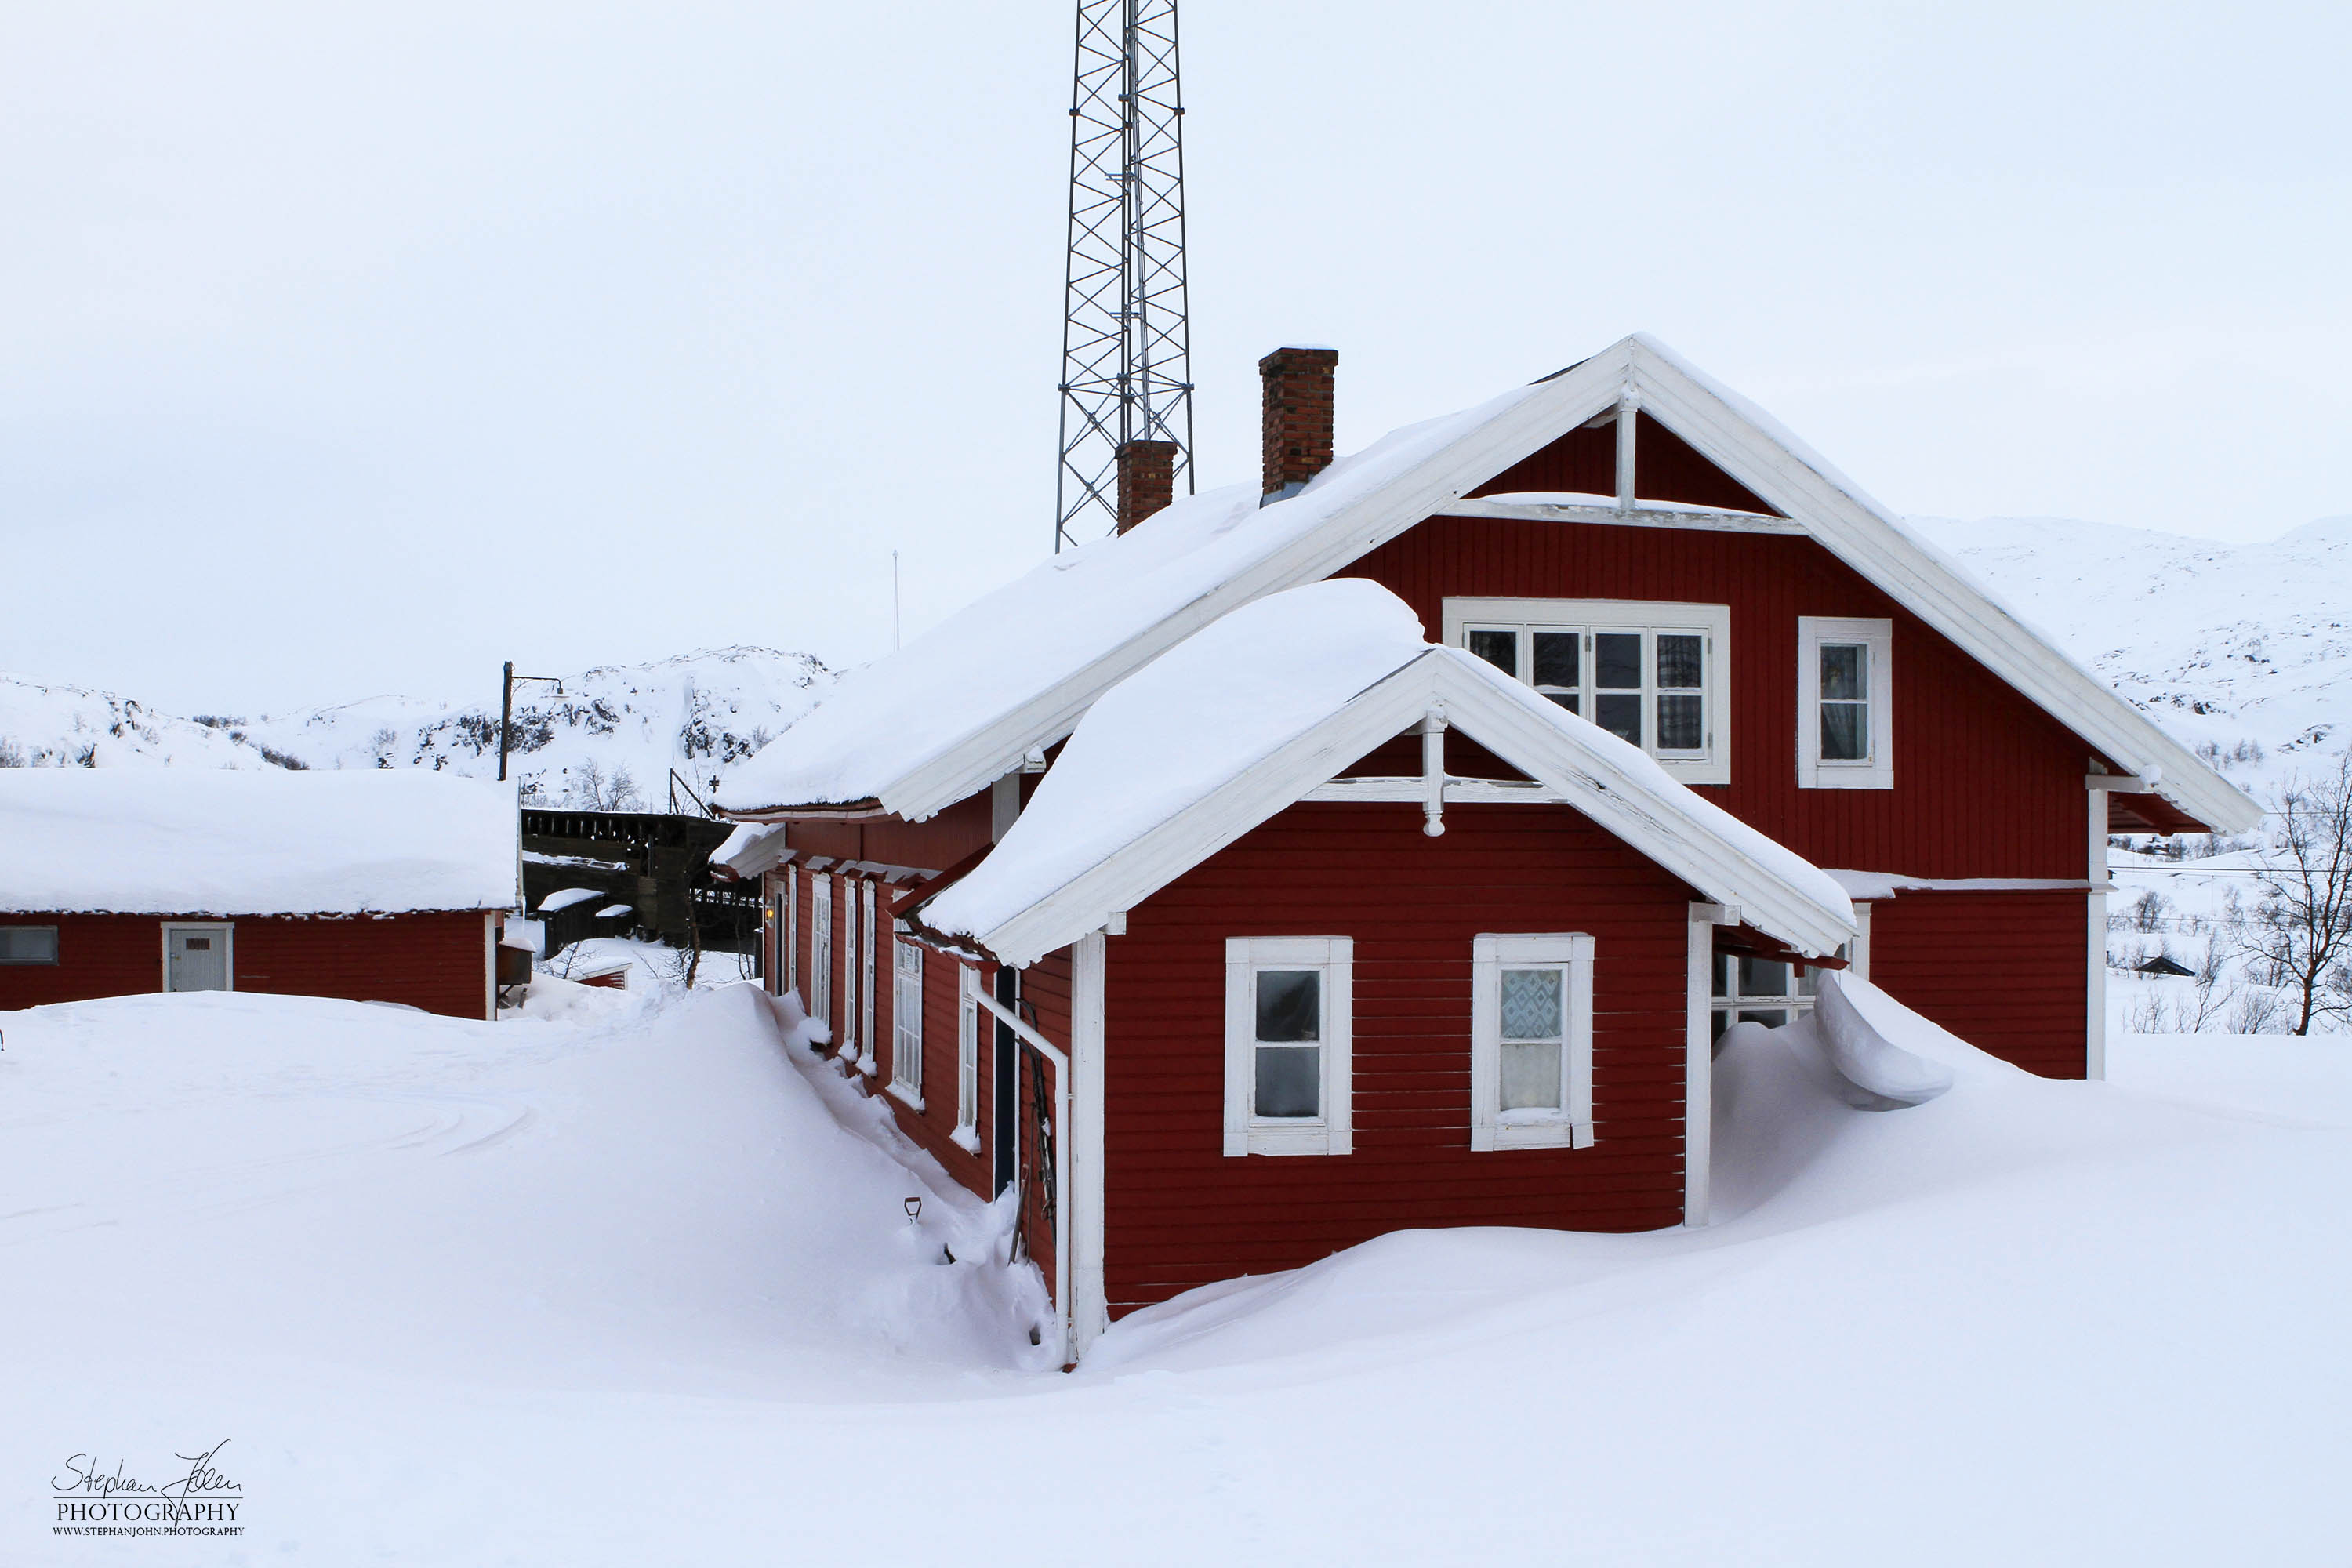 Gebäude des ehemaligen Bahnhofes Haugfjell in Norwegen an der Strecke Narvik - Kiruna (Ofortbahn